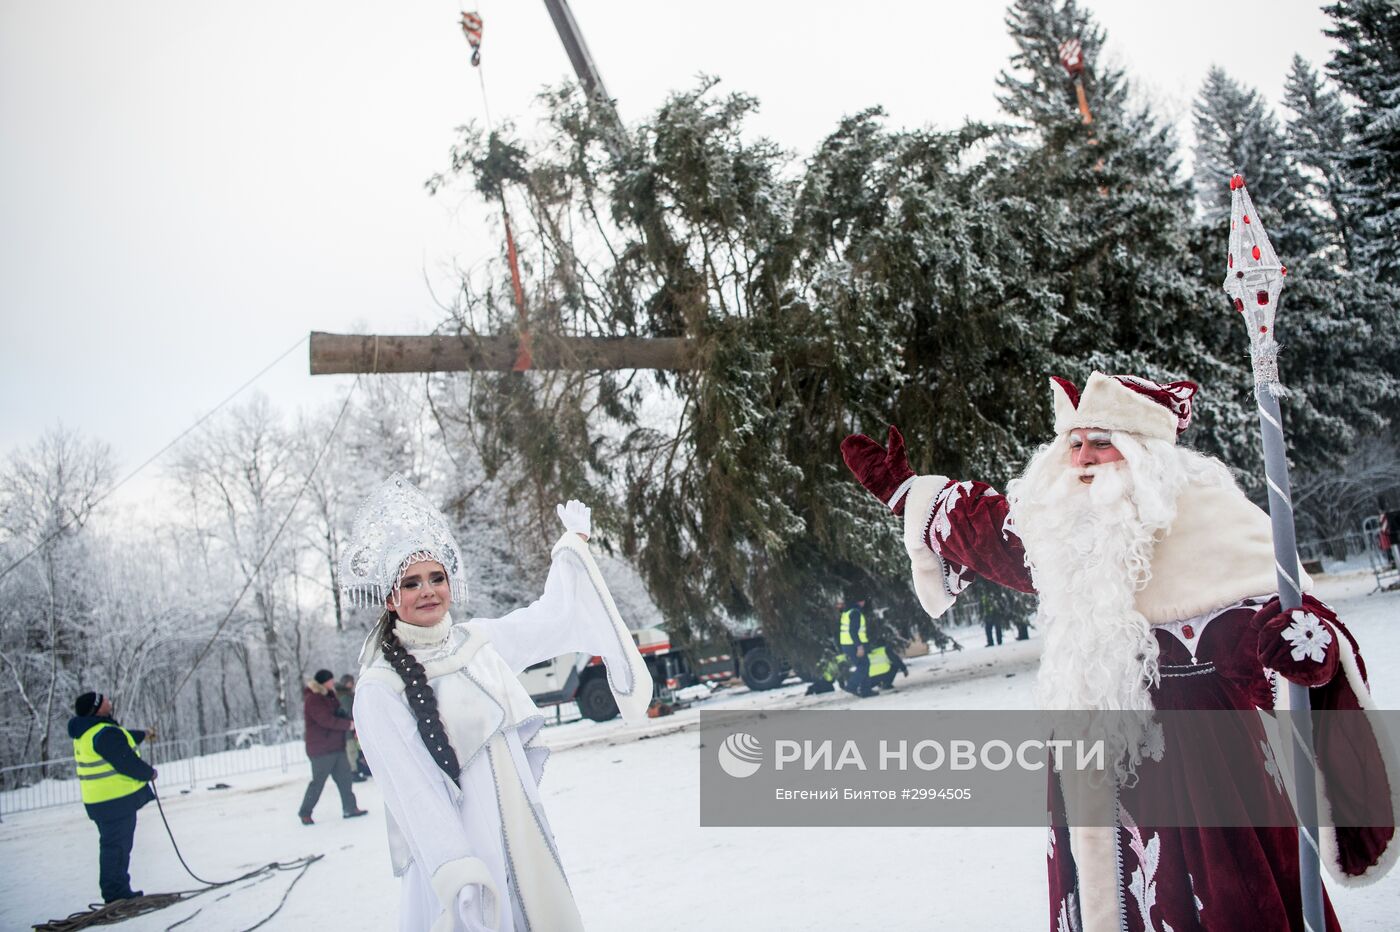 Рубка главной новогодней ели России